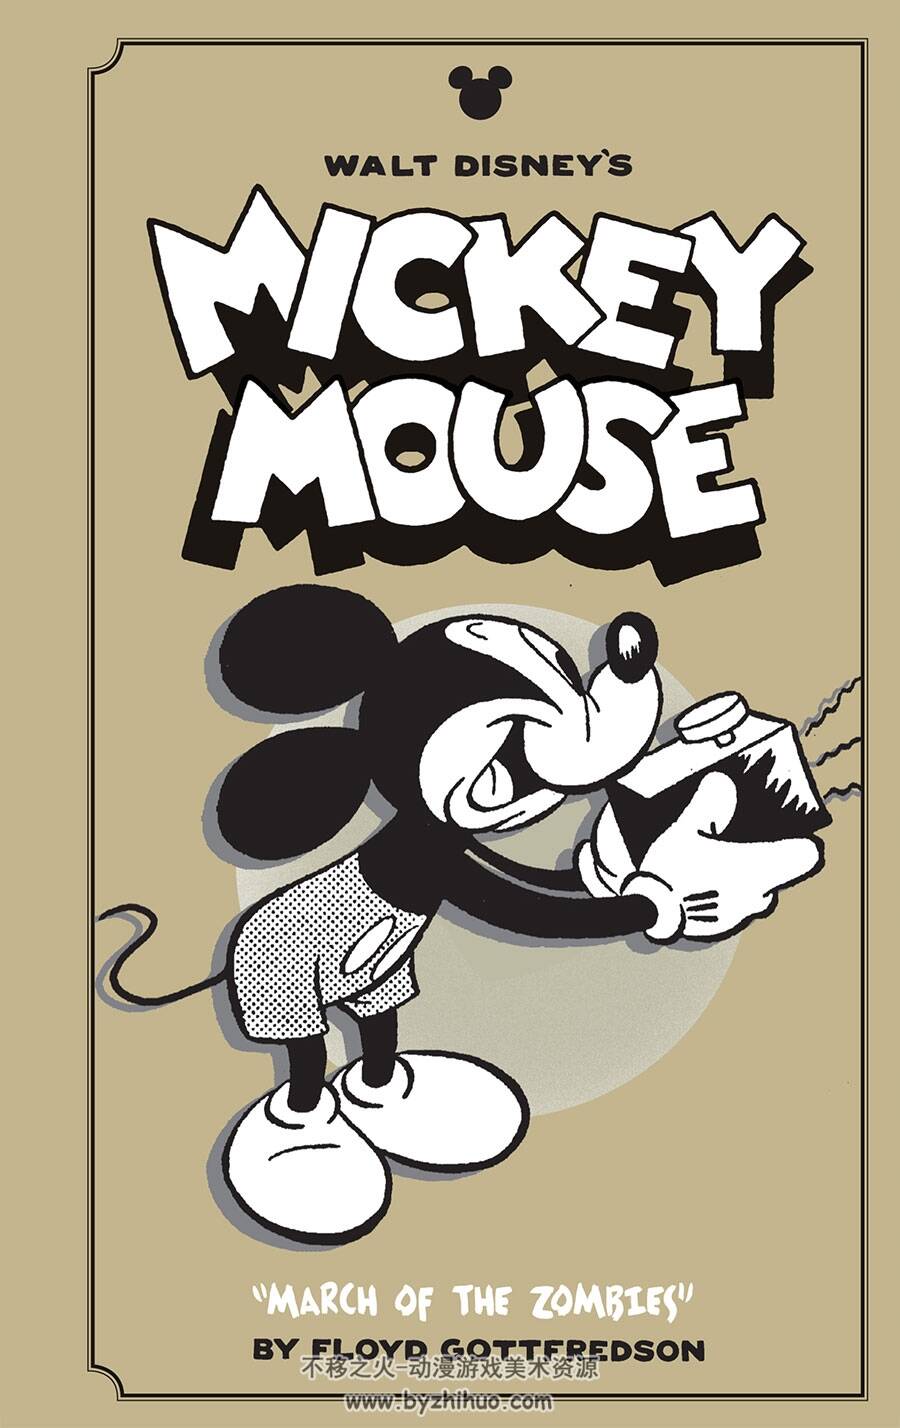 华特·迪士尼的米老鼠 全收集